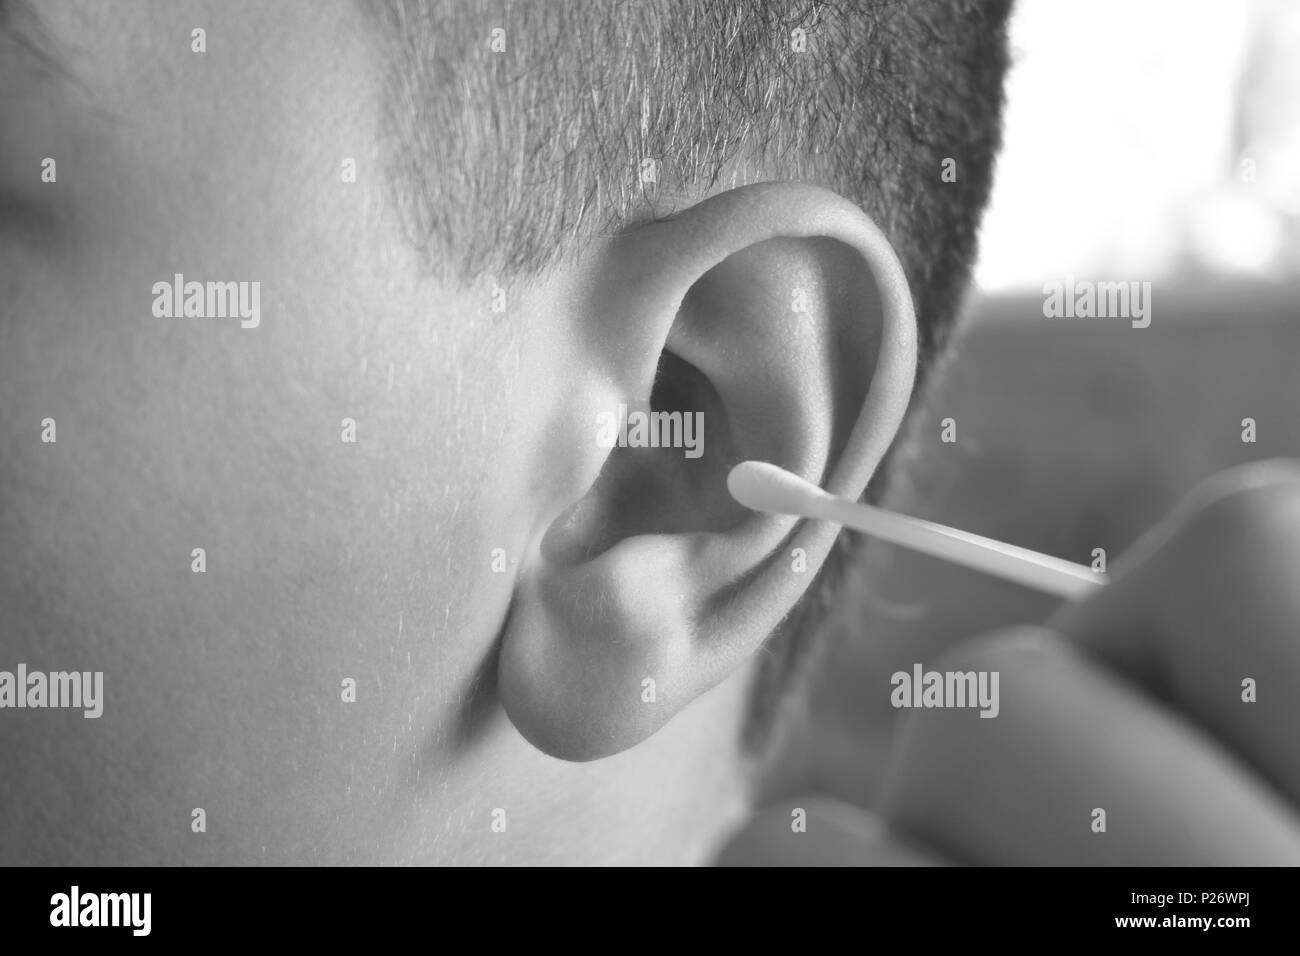 Nettoyage d'oreille image stock. Image du blanc, santé - 15909021